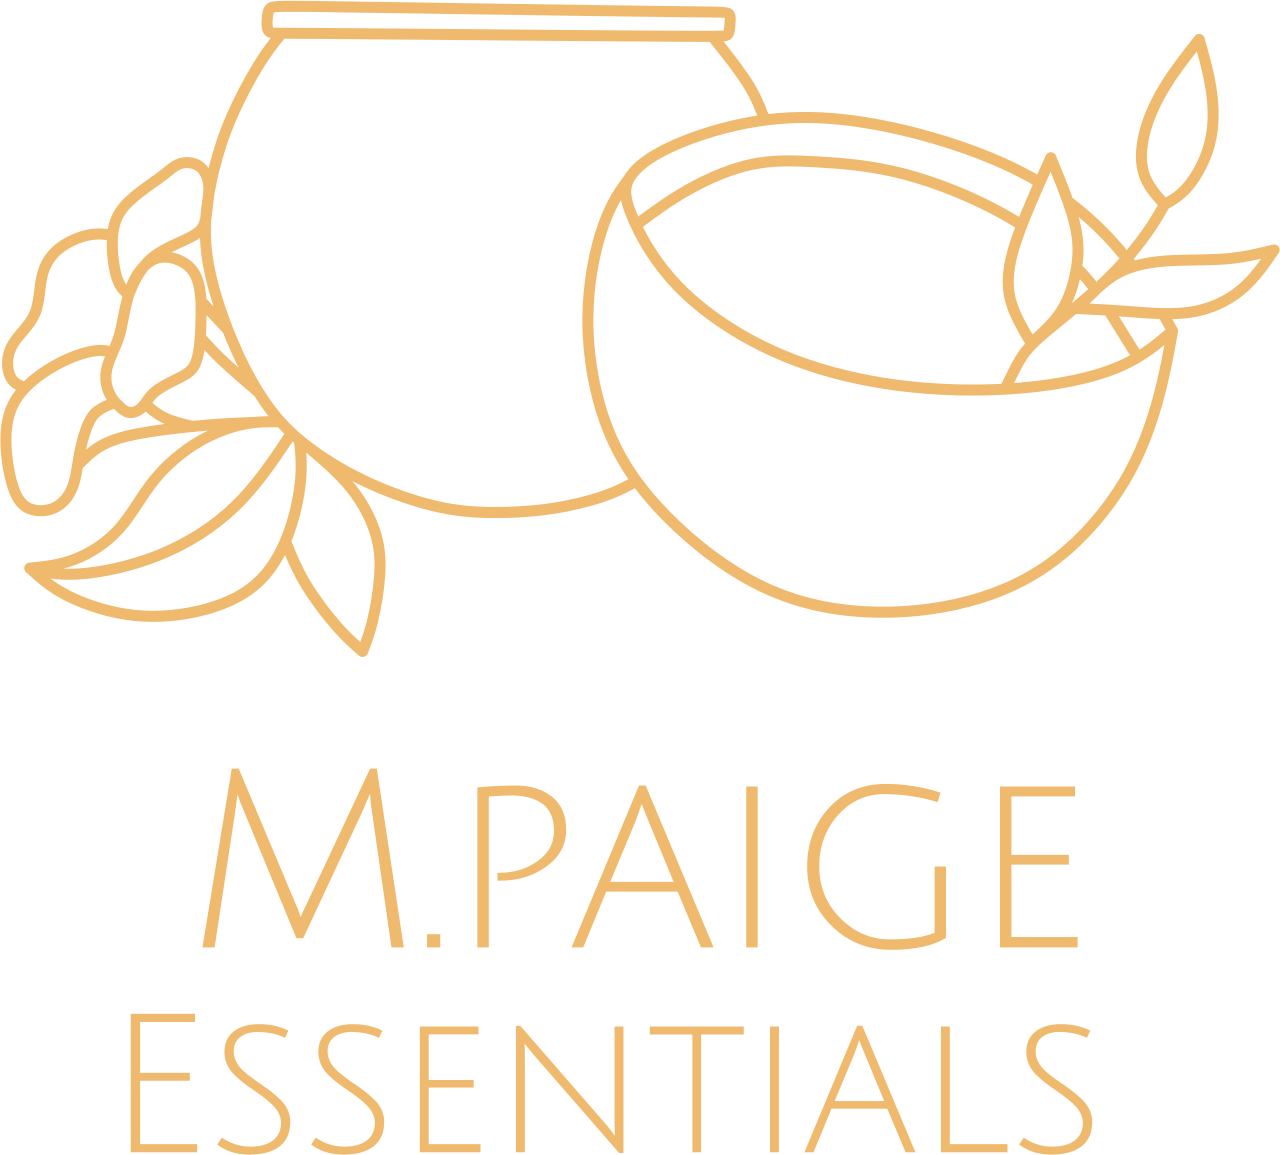 M.paige's web page